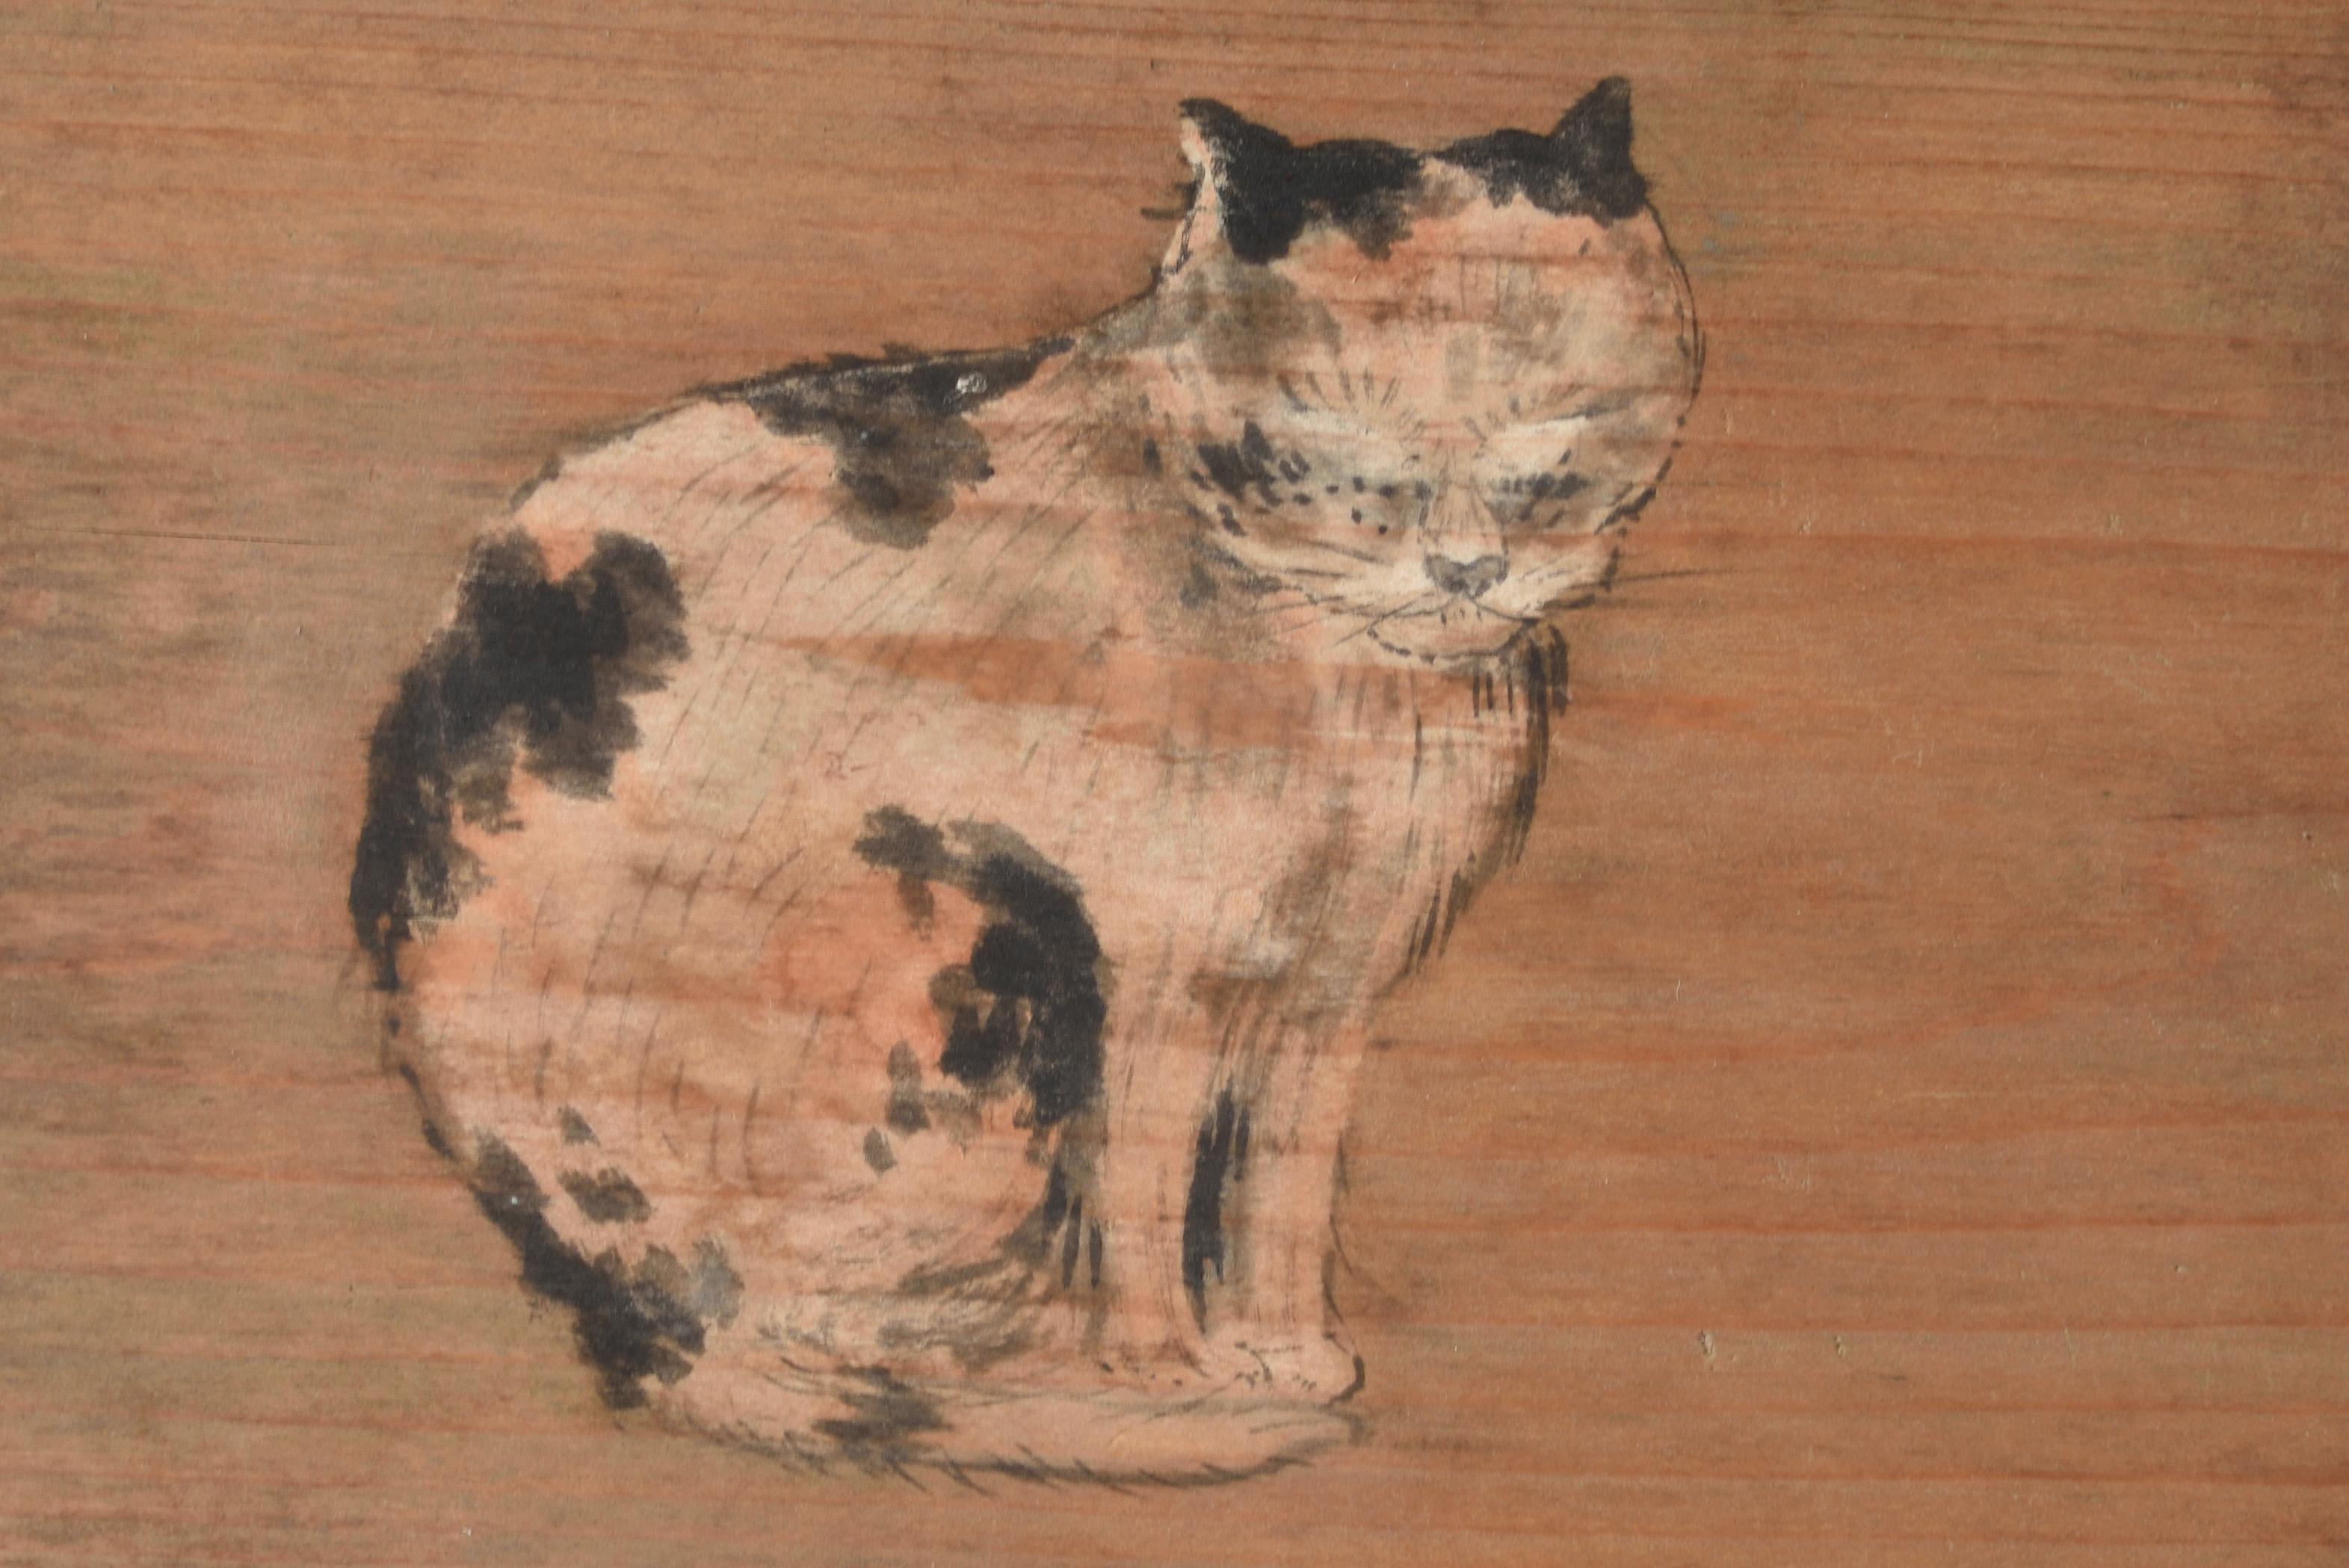 EMA DE CAT - Pièce d'art populaire shintoïste japonais anonyme représentant une tablette votive en bois offerte pour le sanctuaire appelé 